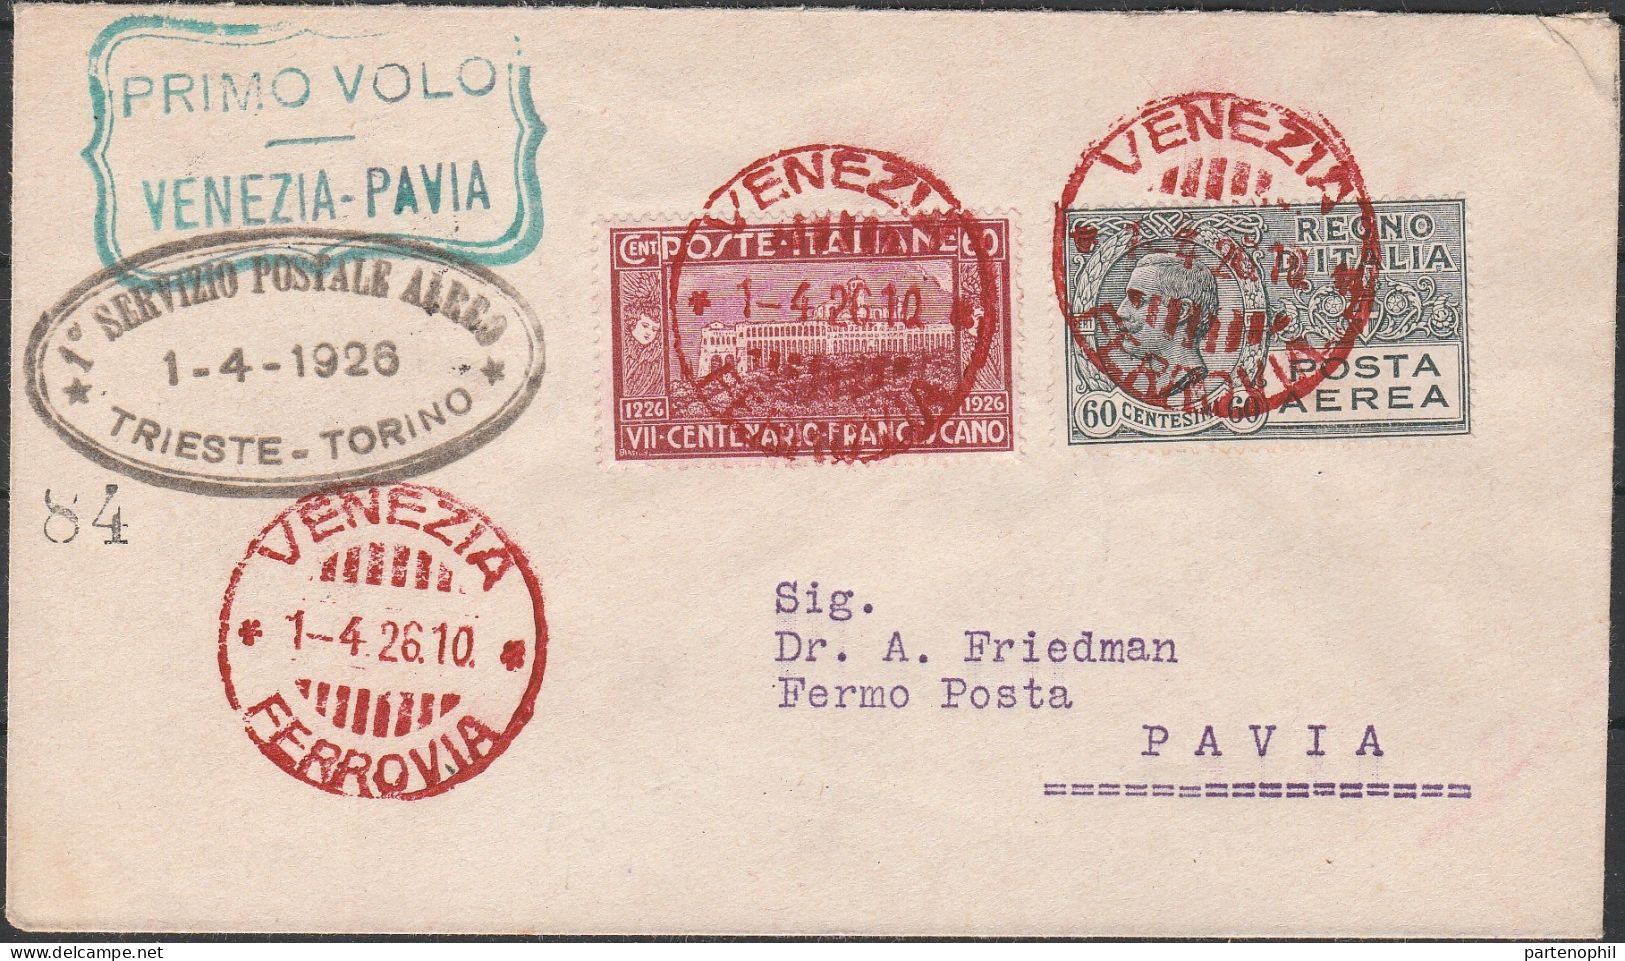 97 - Posta Aerea - Linea Aerea Commerciale Venezia-Pavia Del 1.4.1926, Con Annullo Di Arrivo Al Verso Su Segnatasse Da 3 - Marcofilie (Luchtvaart)